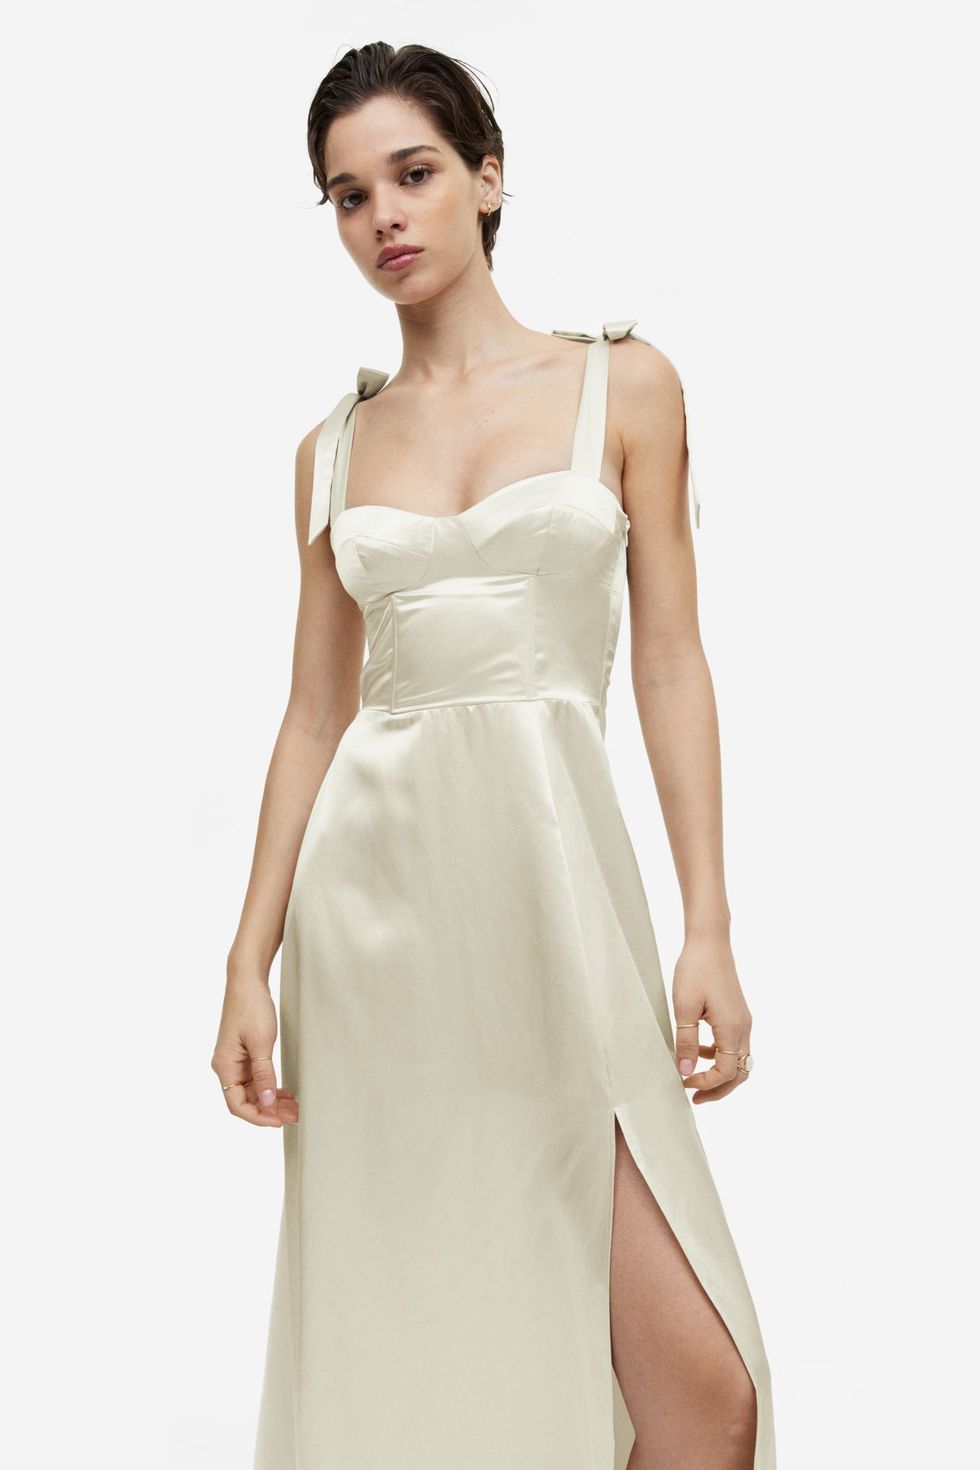 El vestido de novia de 39 € de H&M que ha colapsado la logística y sueca